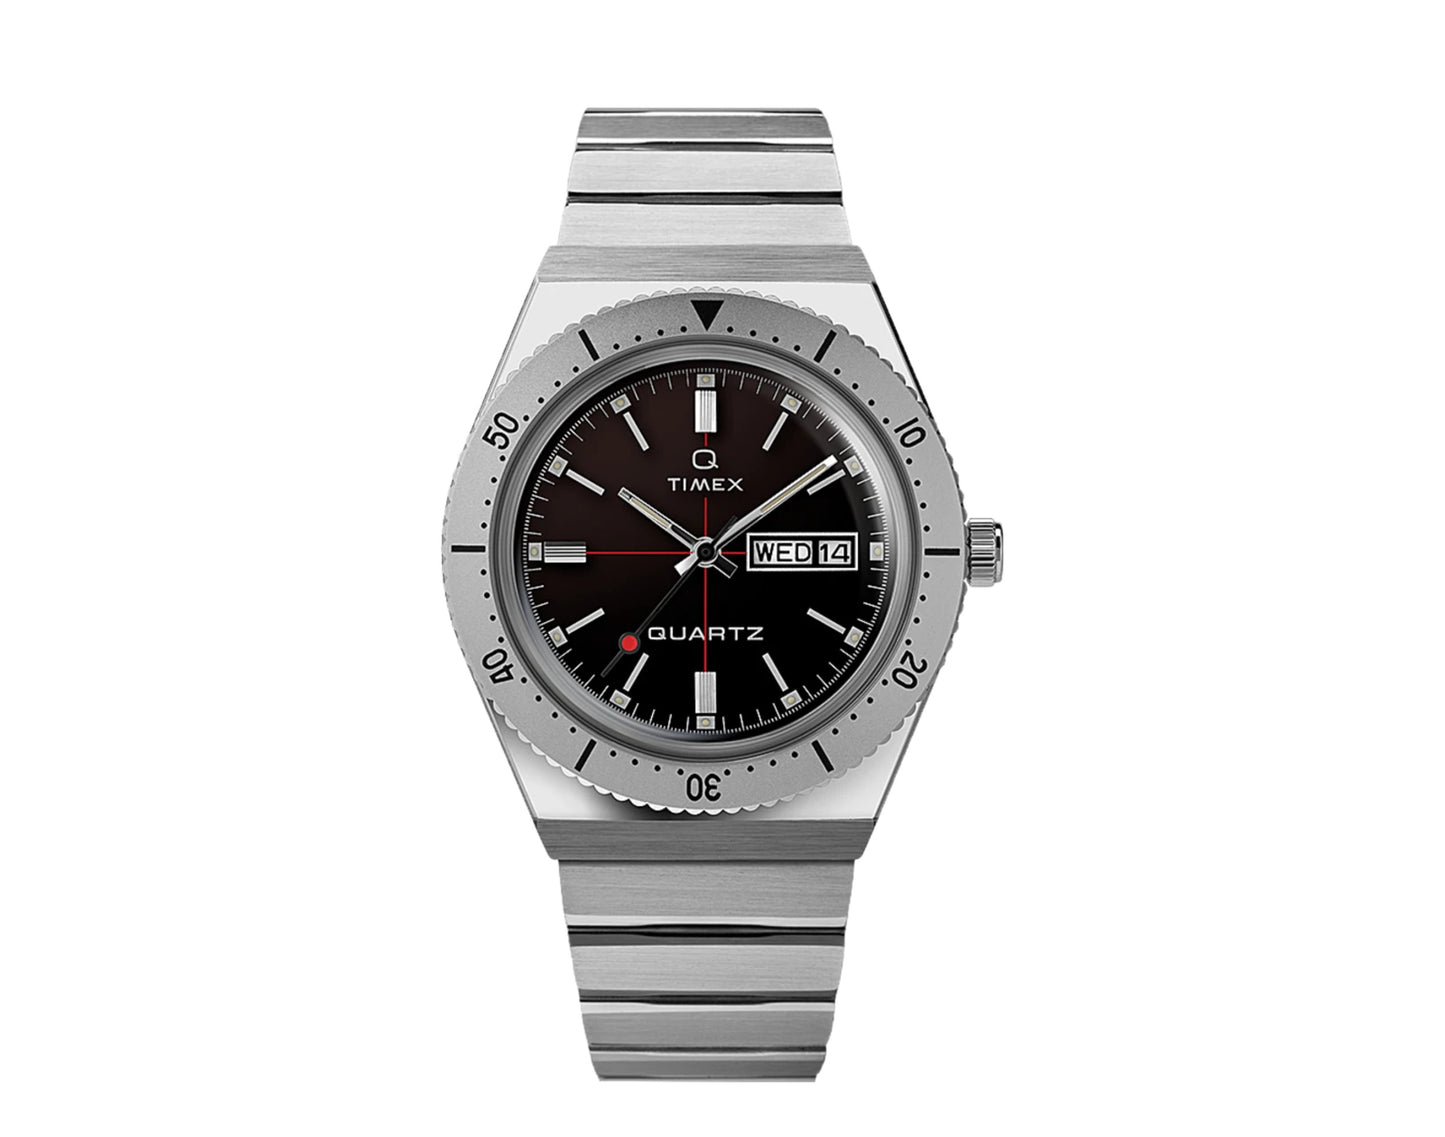 Timex Q x Todd Snyder 38mm Stainless Steel Bracelet Watch